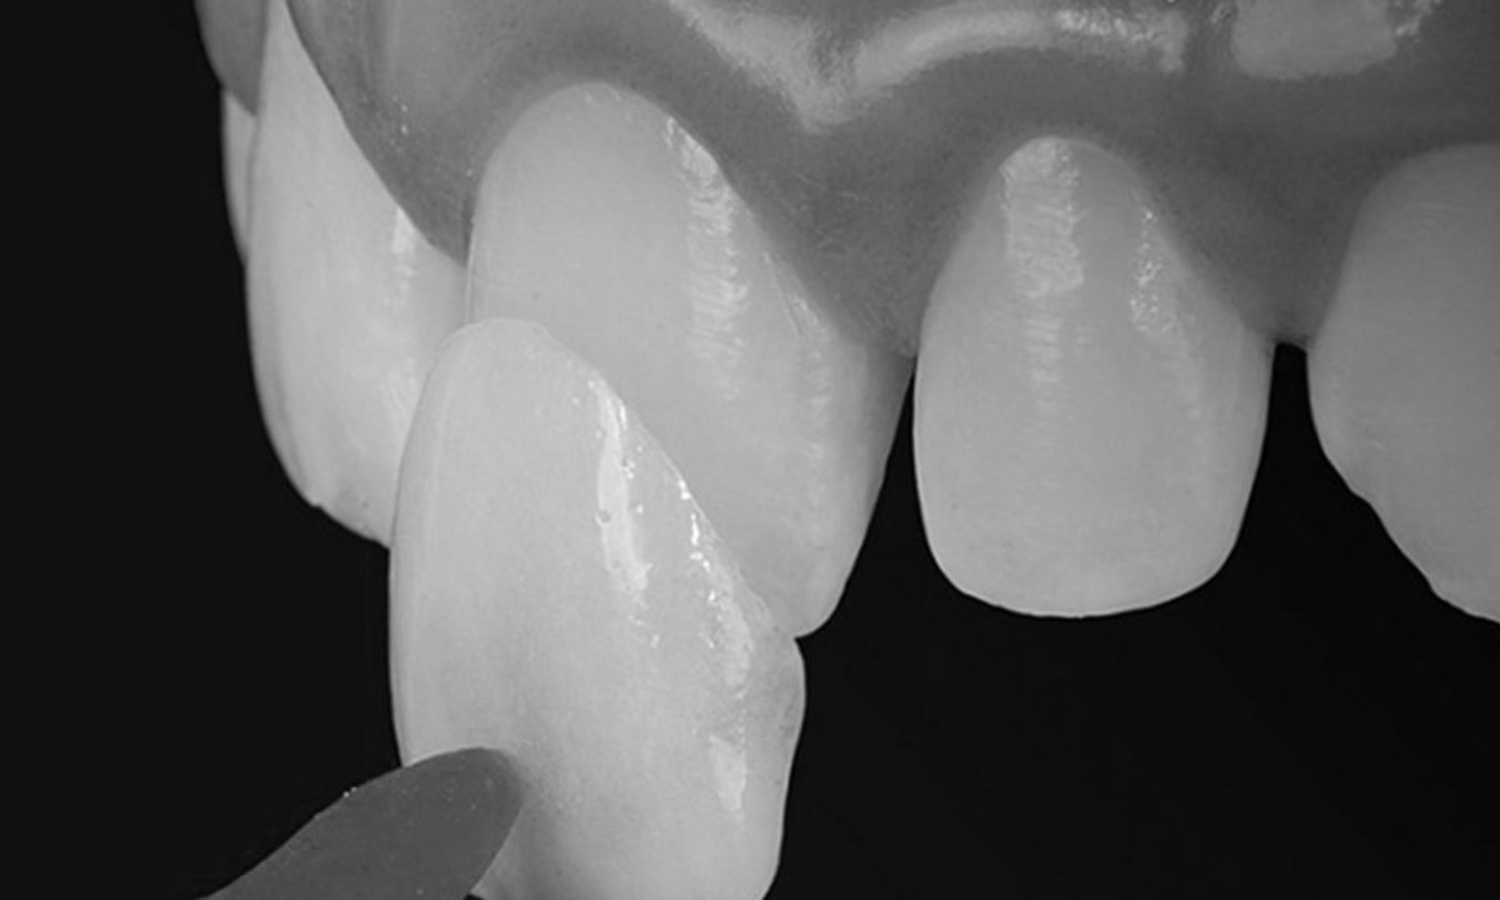 lente de contato dental e prótese dentária fixa